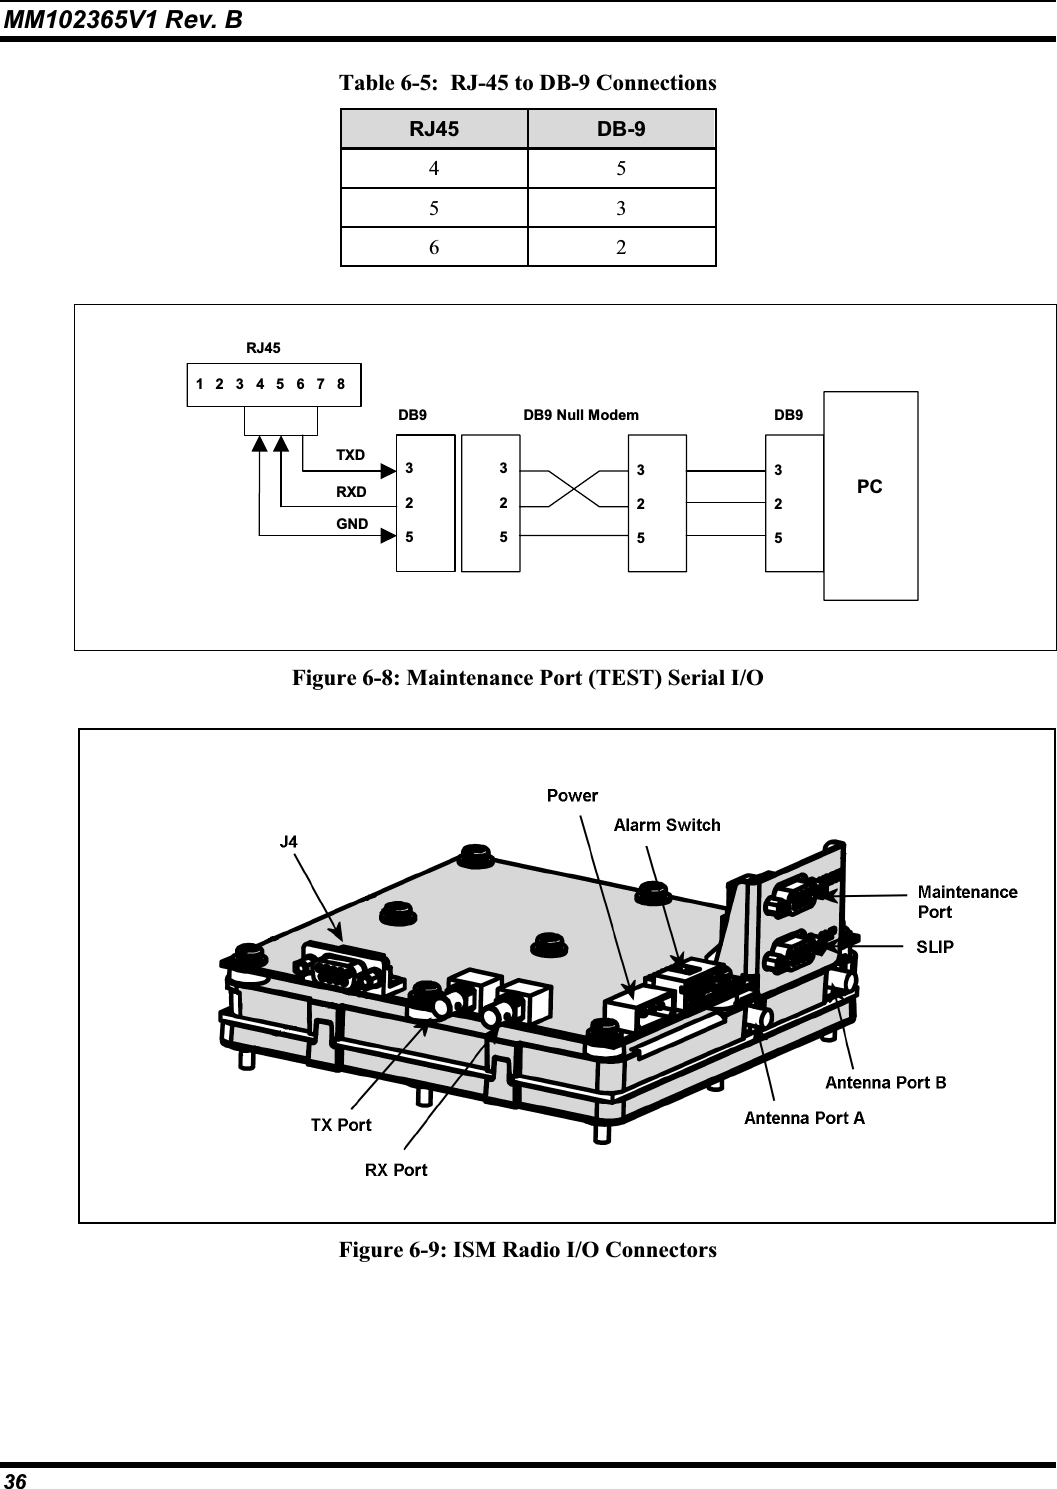 MM102365V1 Rev. B Table 6-5:  RJ-45 to DB-9 Connections RJ45 DB-9455362325325325DB9PCDB9 Null Modem32512345678DB9TXDRXDGNDRJ45Figure 6-8: Maintenance Port (TEST) Serial I/O Figure 6-9: ISM Radio I/O Connectors 36